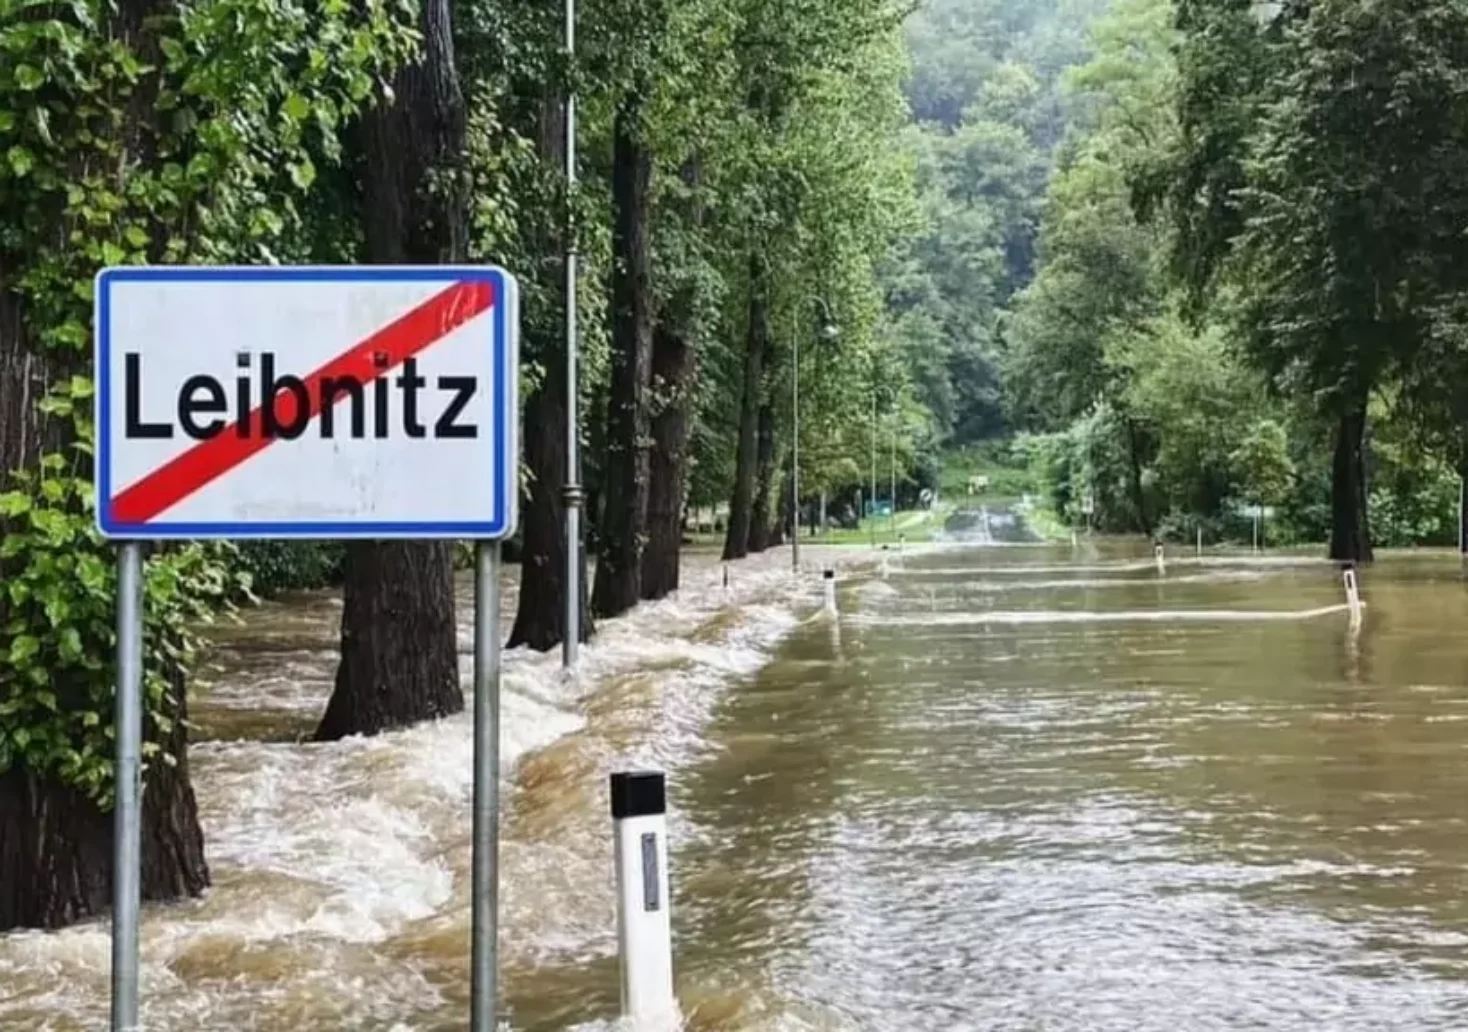 Foto in Beitrag von 5min.at: Zu sehen ist die Ortsende-Tafel von Leibnitz unter Wasser.